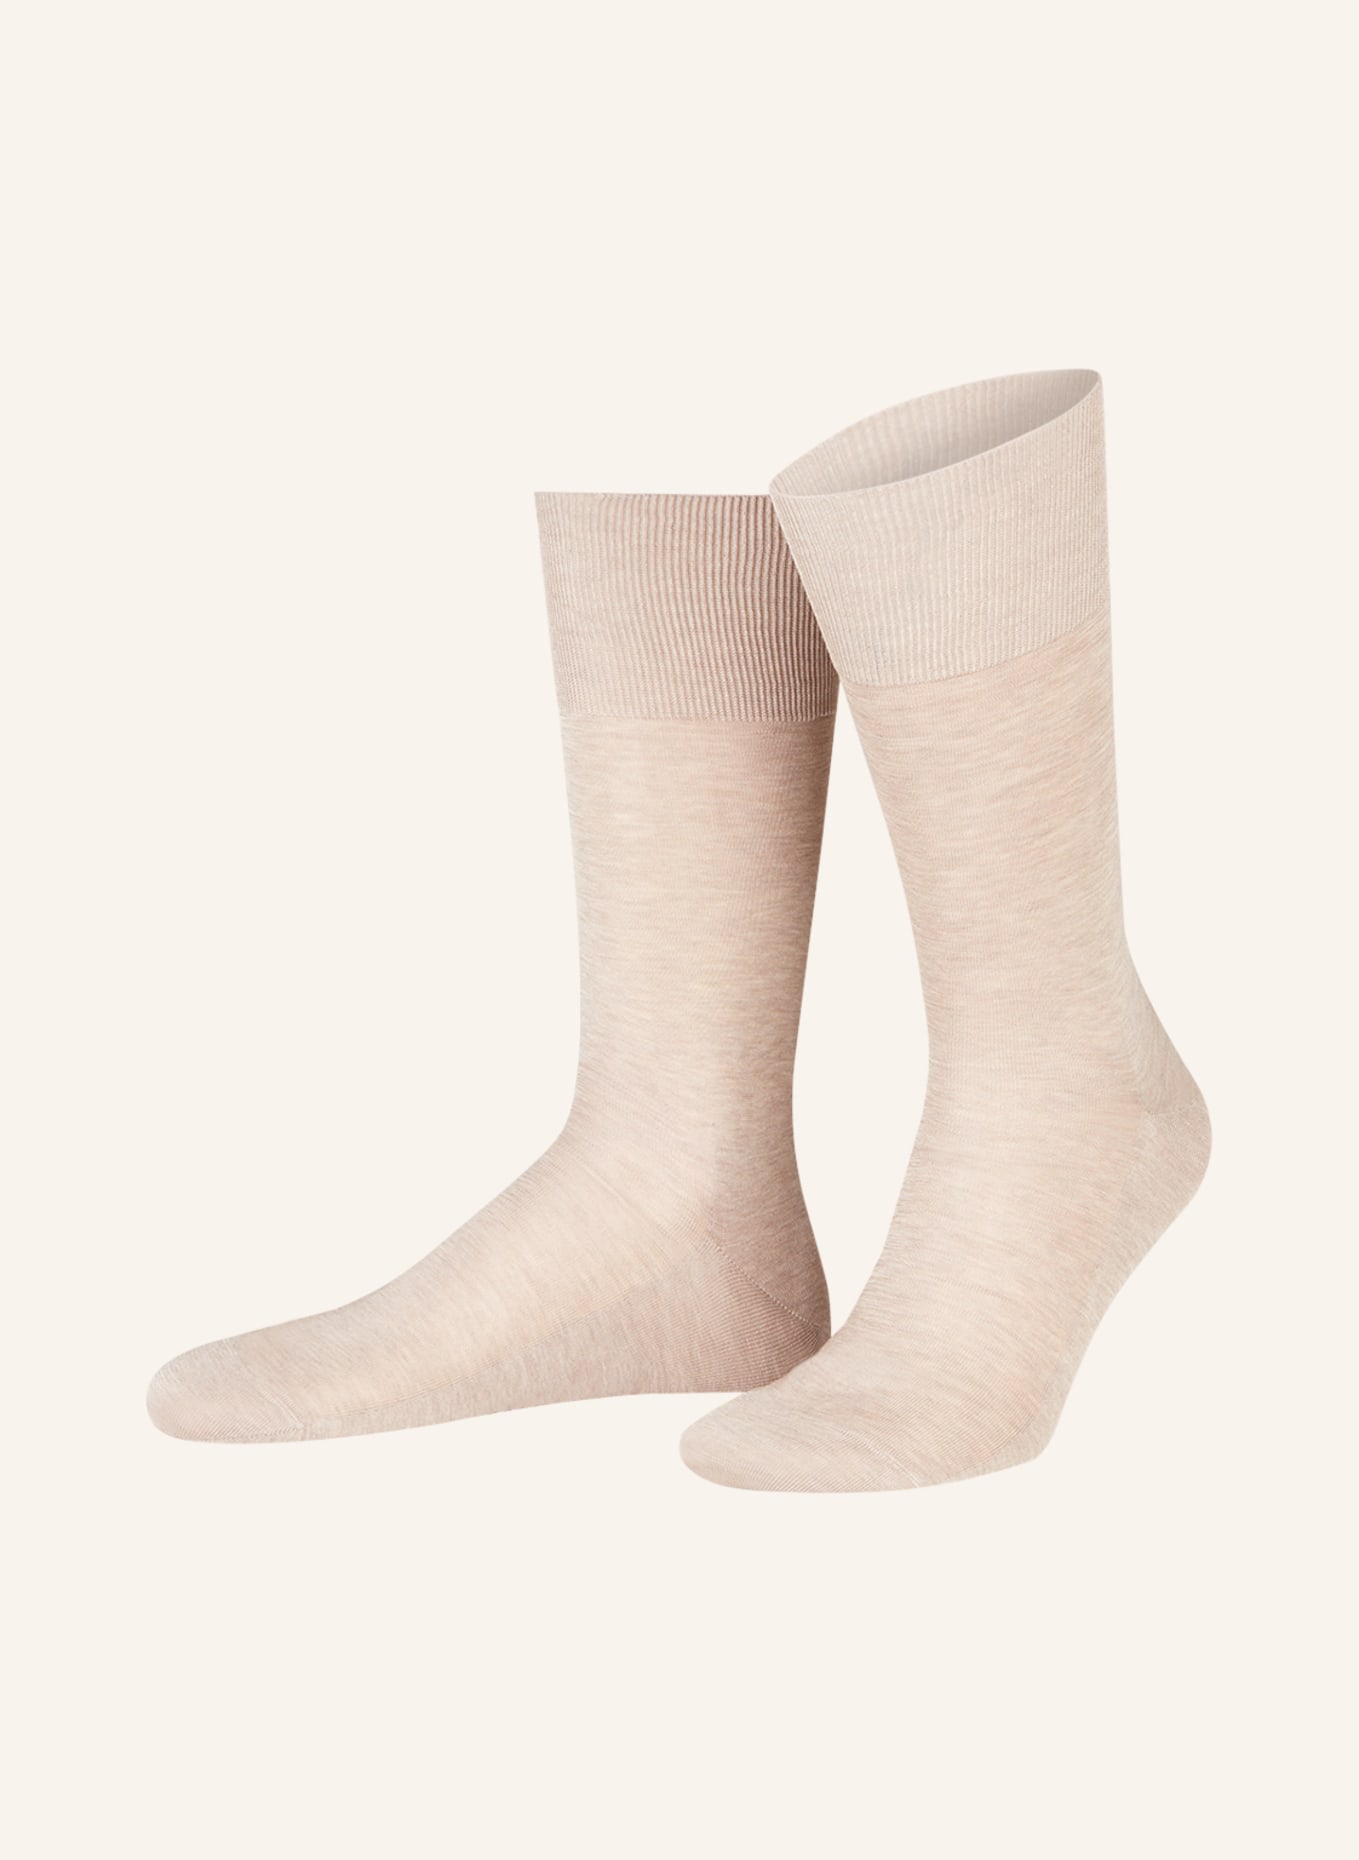 FALKE Socken LUXURY NO. 9, Farbe: 4087 wheat mel. (Bild 1)